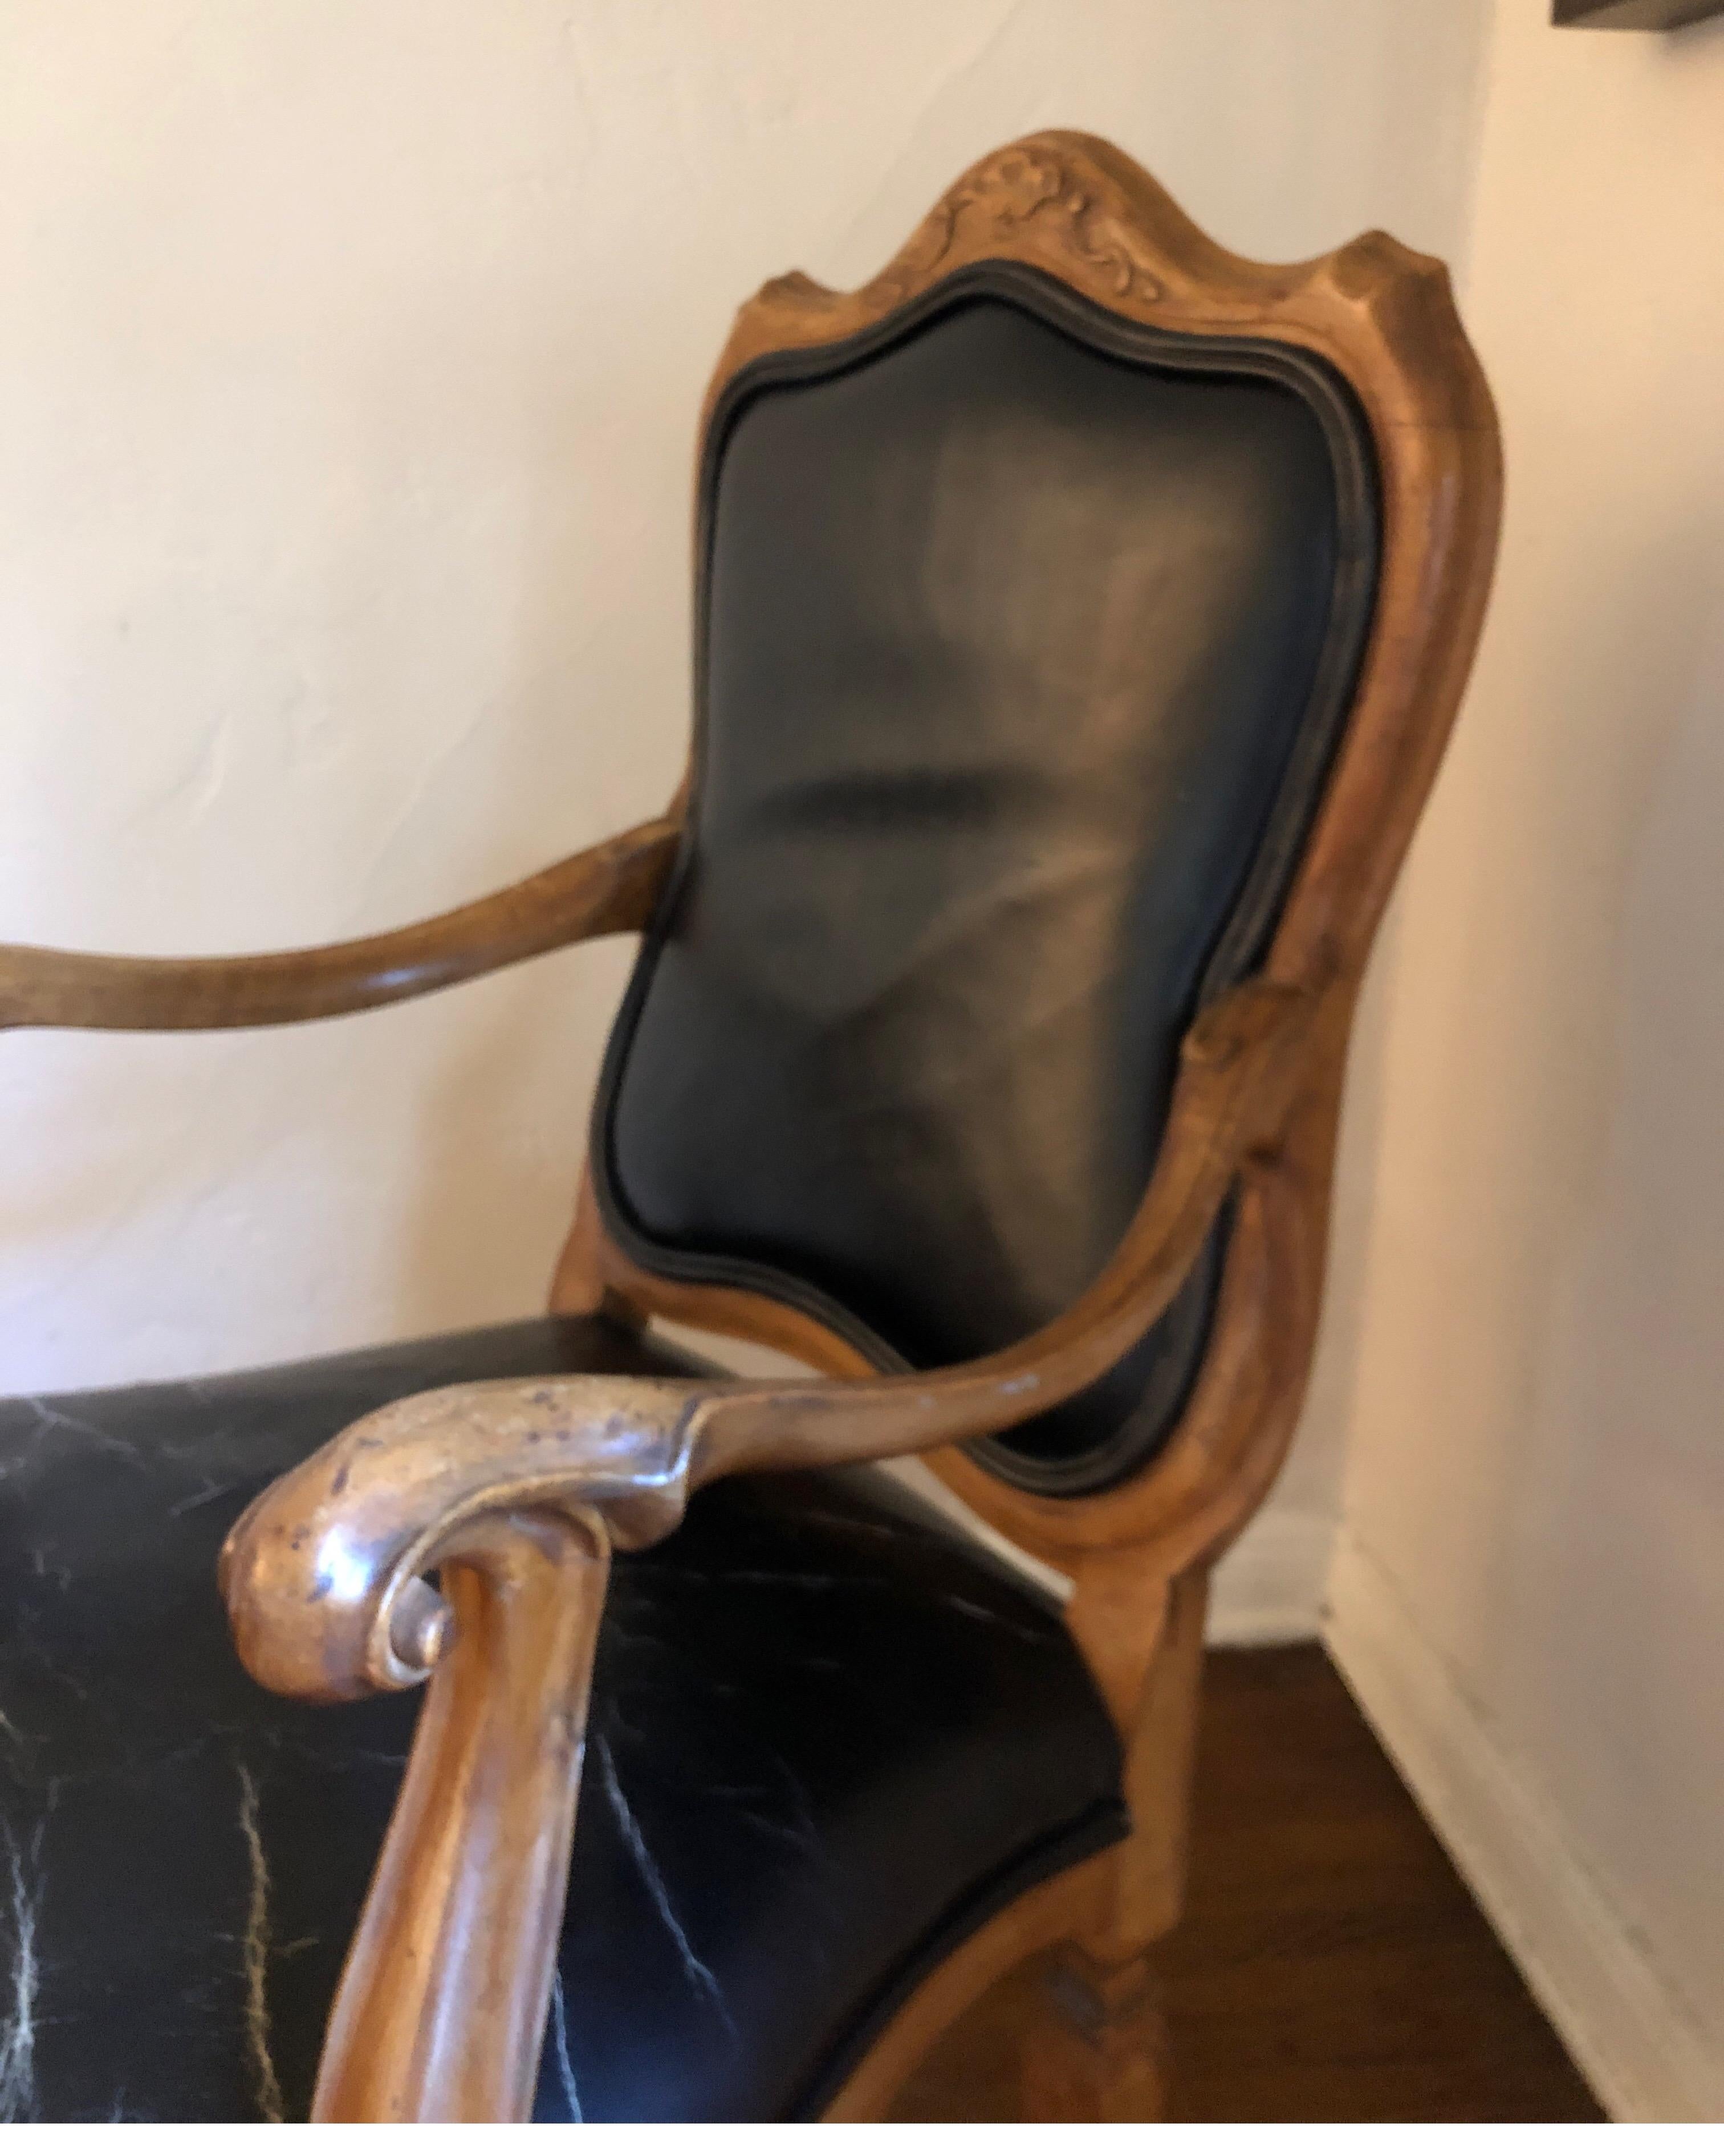 Exceptionnelle chaise sculptée de style vénitien fabriquée en Italie.
Taille parfaite pour un bureau.
Détails sculptés le long du dos et grosse poignée incurvée sur le repose-main.
La sellerie en cuir noir présente une forte usure sur le coussin